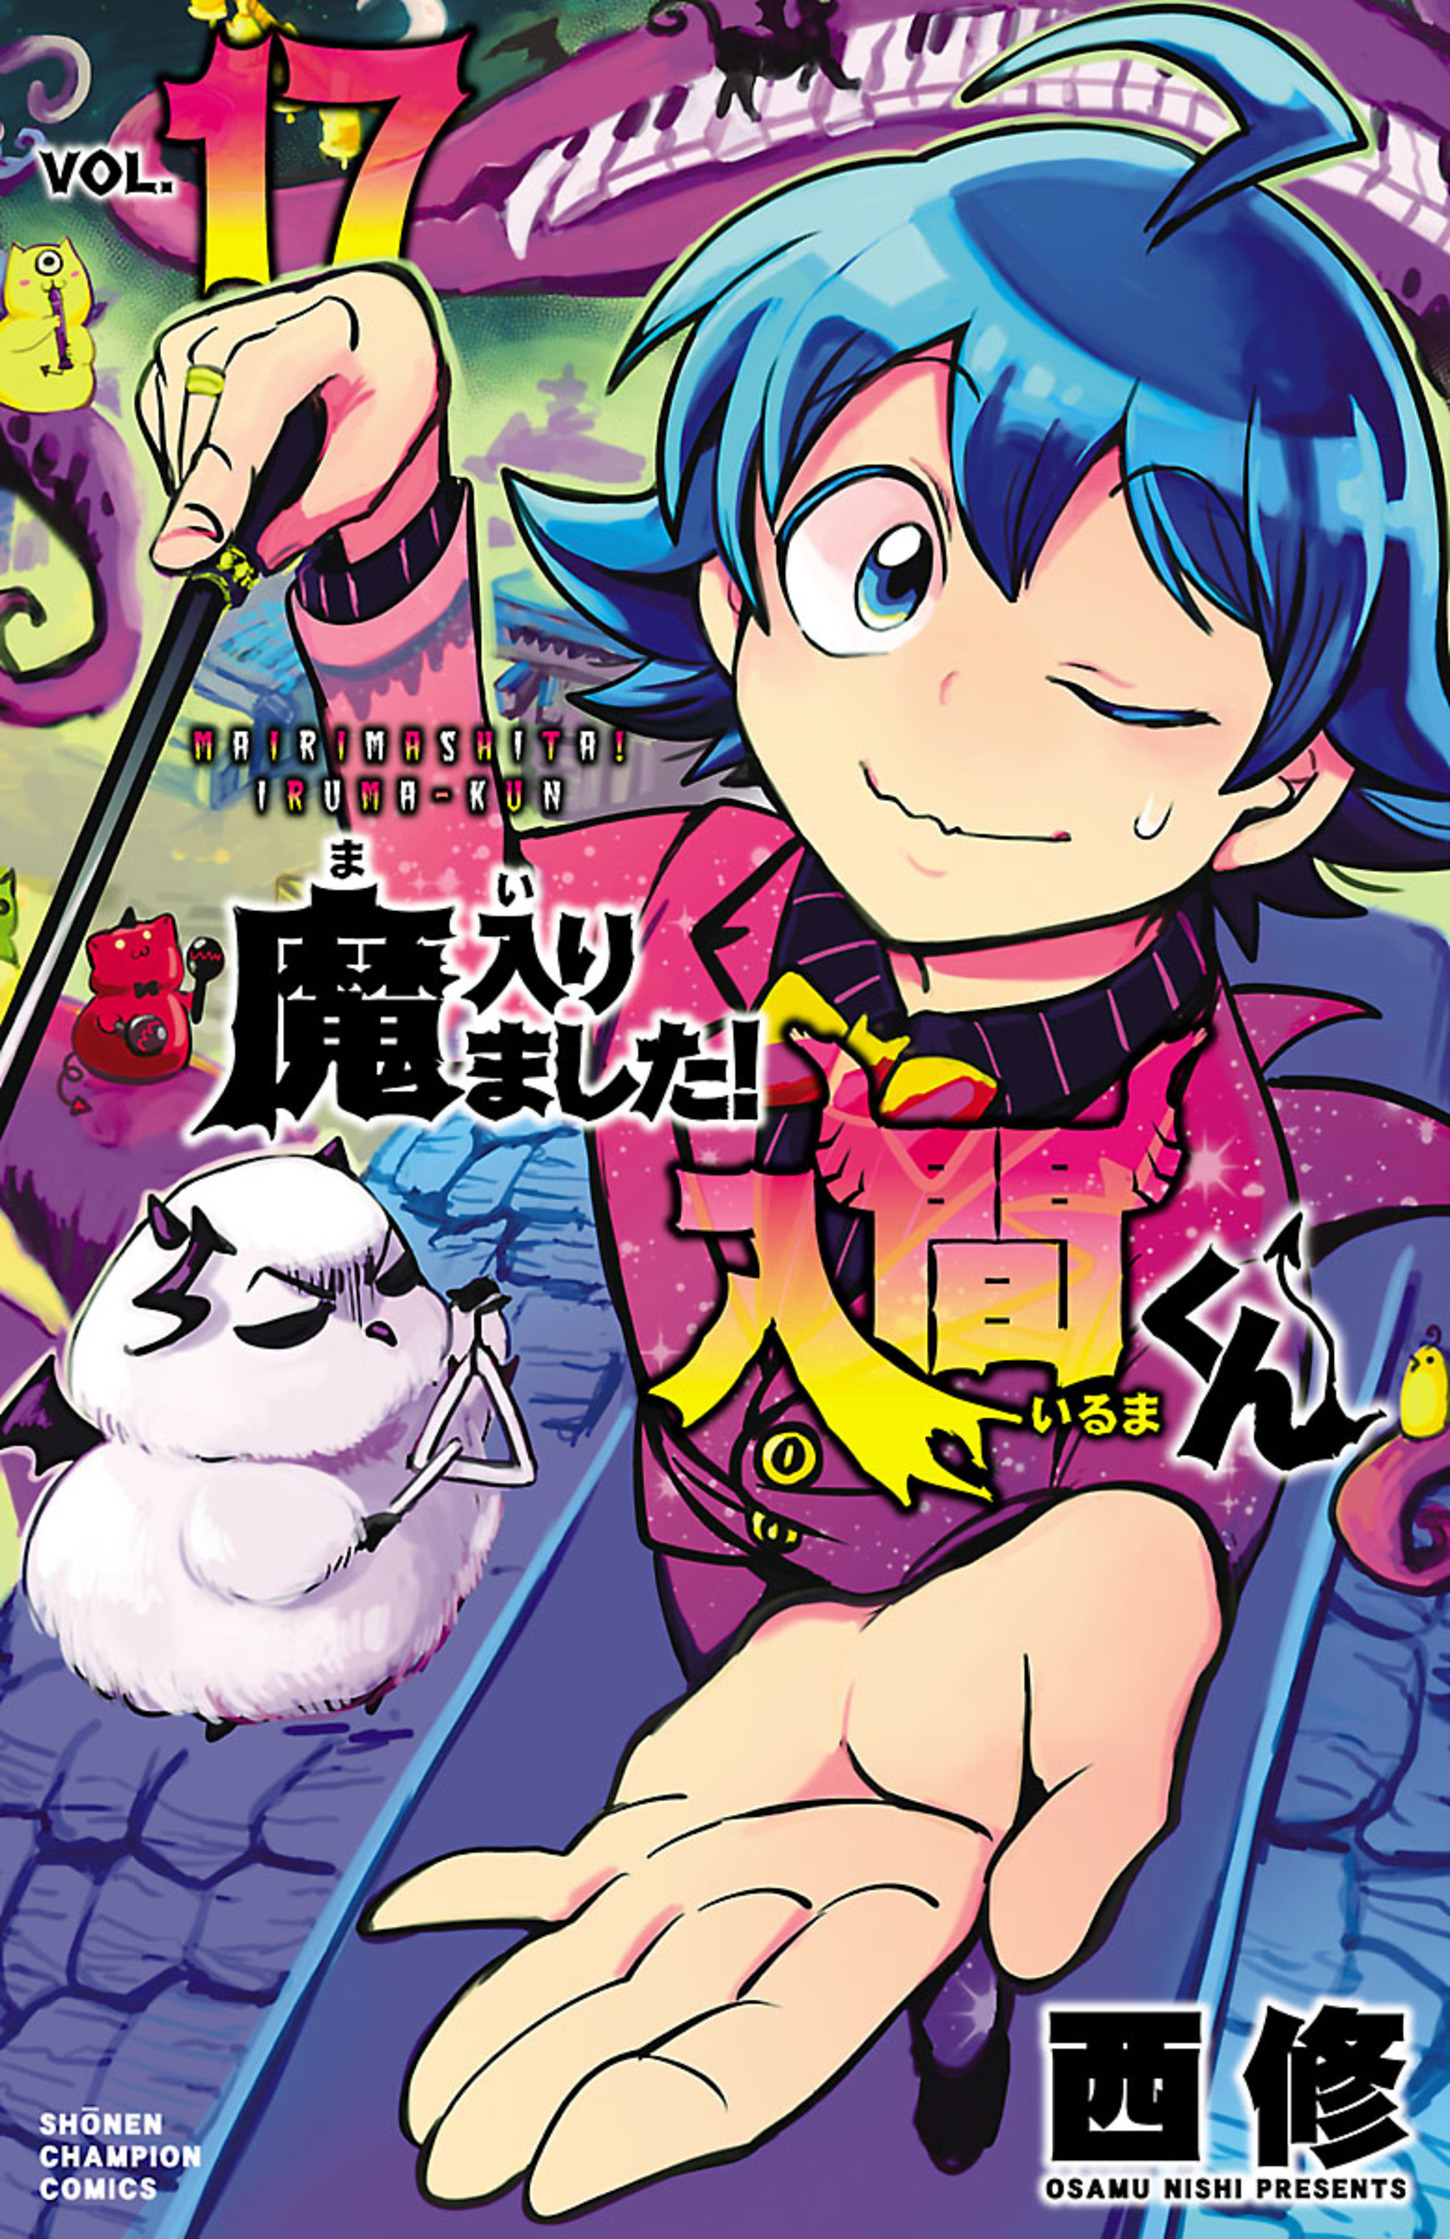 Mairimashita Iruma-Kun, Chapter 232 - Mairimashita Iruma-Kun Manga Online